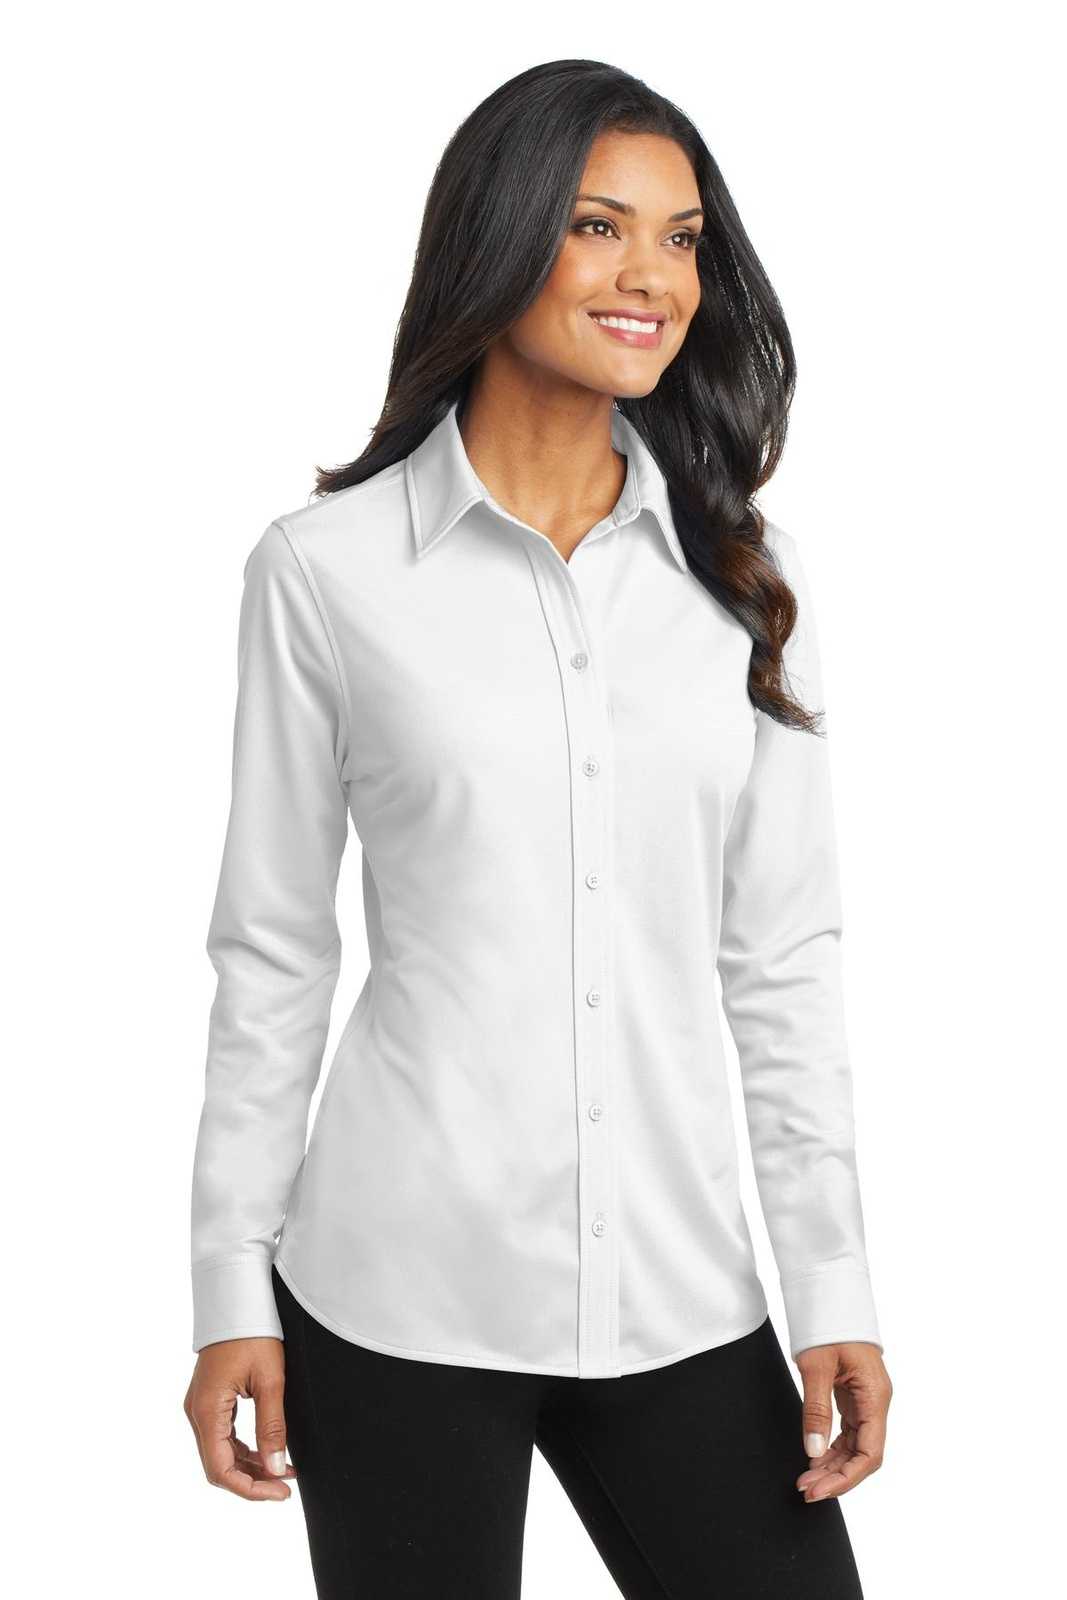 Port Authority L570 Ladies Dimension Knit Dress Shirt - White - HIT a Double - 4